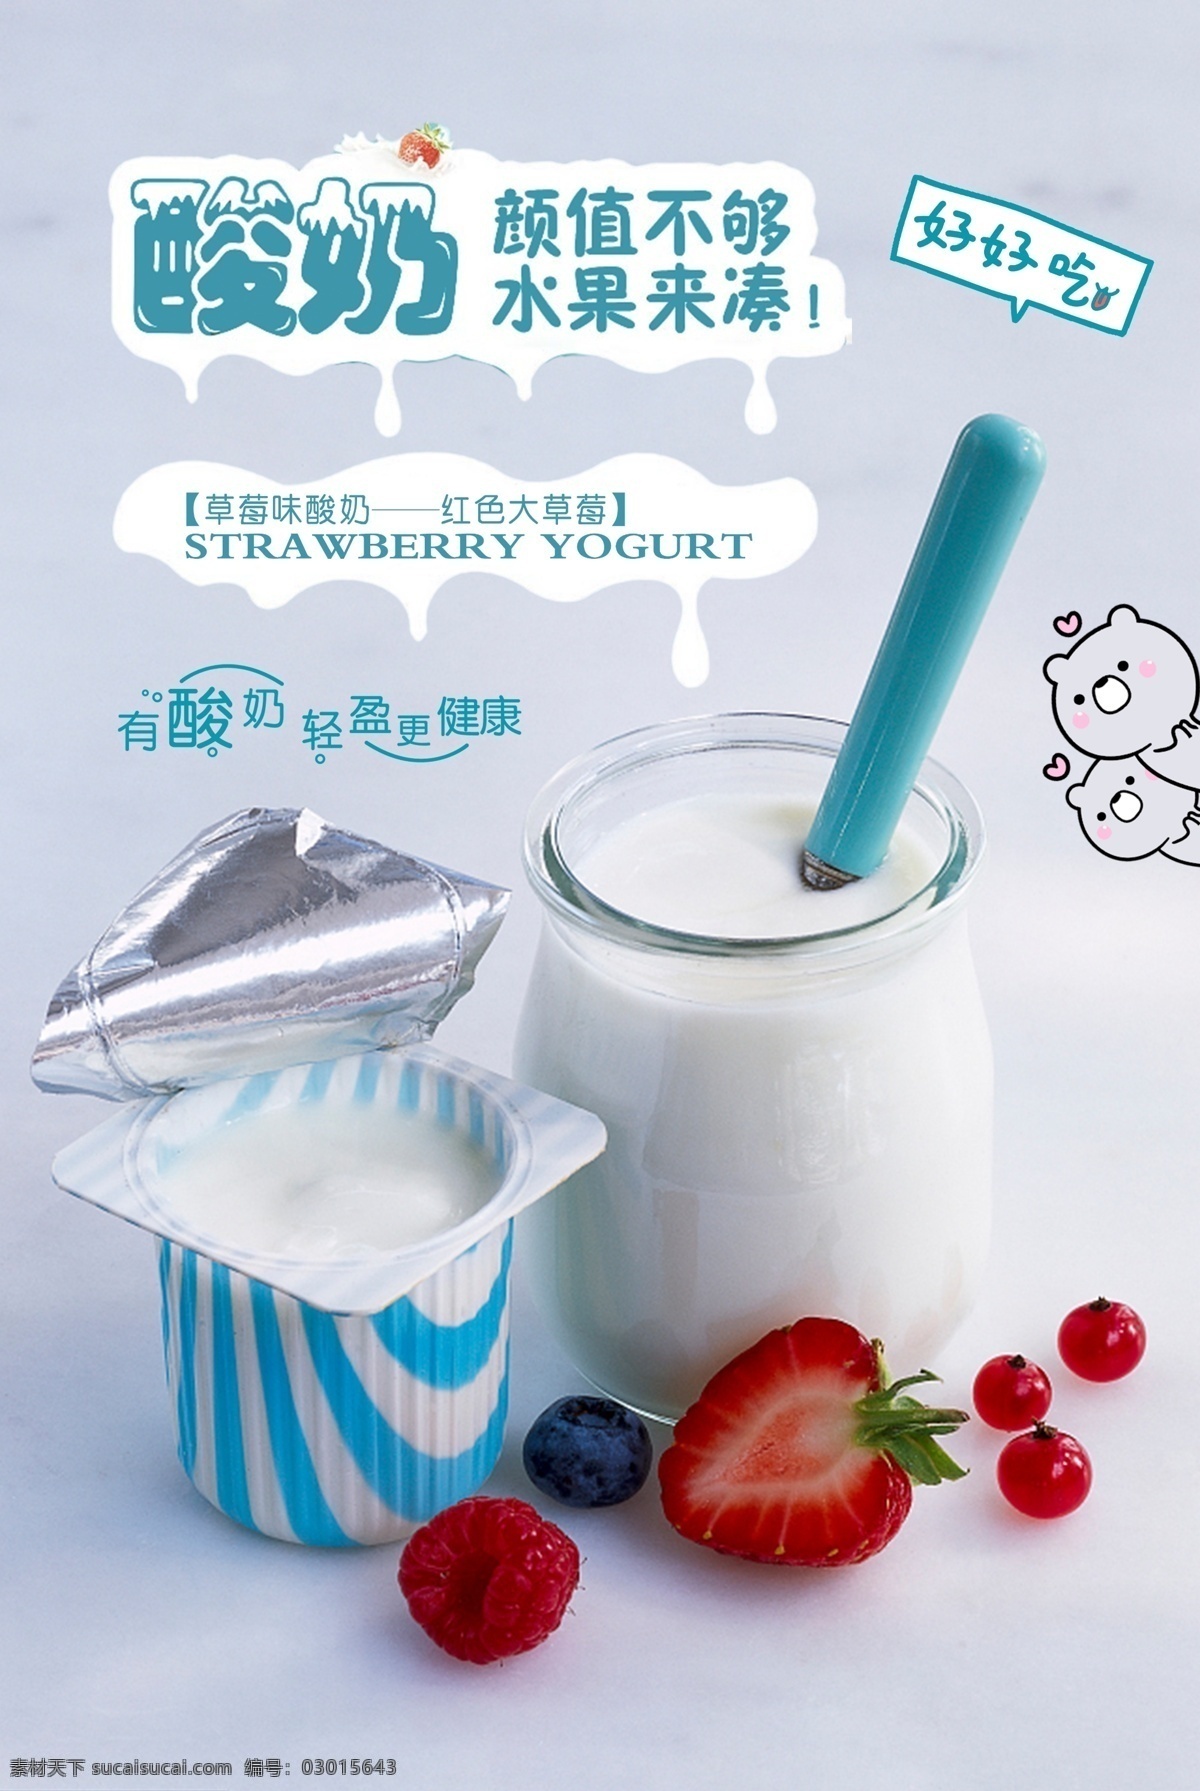 酸奶海报 酸奶 自制酸奶 饮品 牛奶 草莓酸奶 杯装酸奶 海报